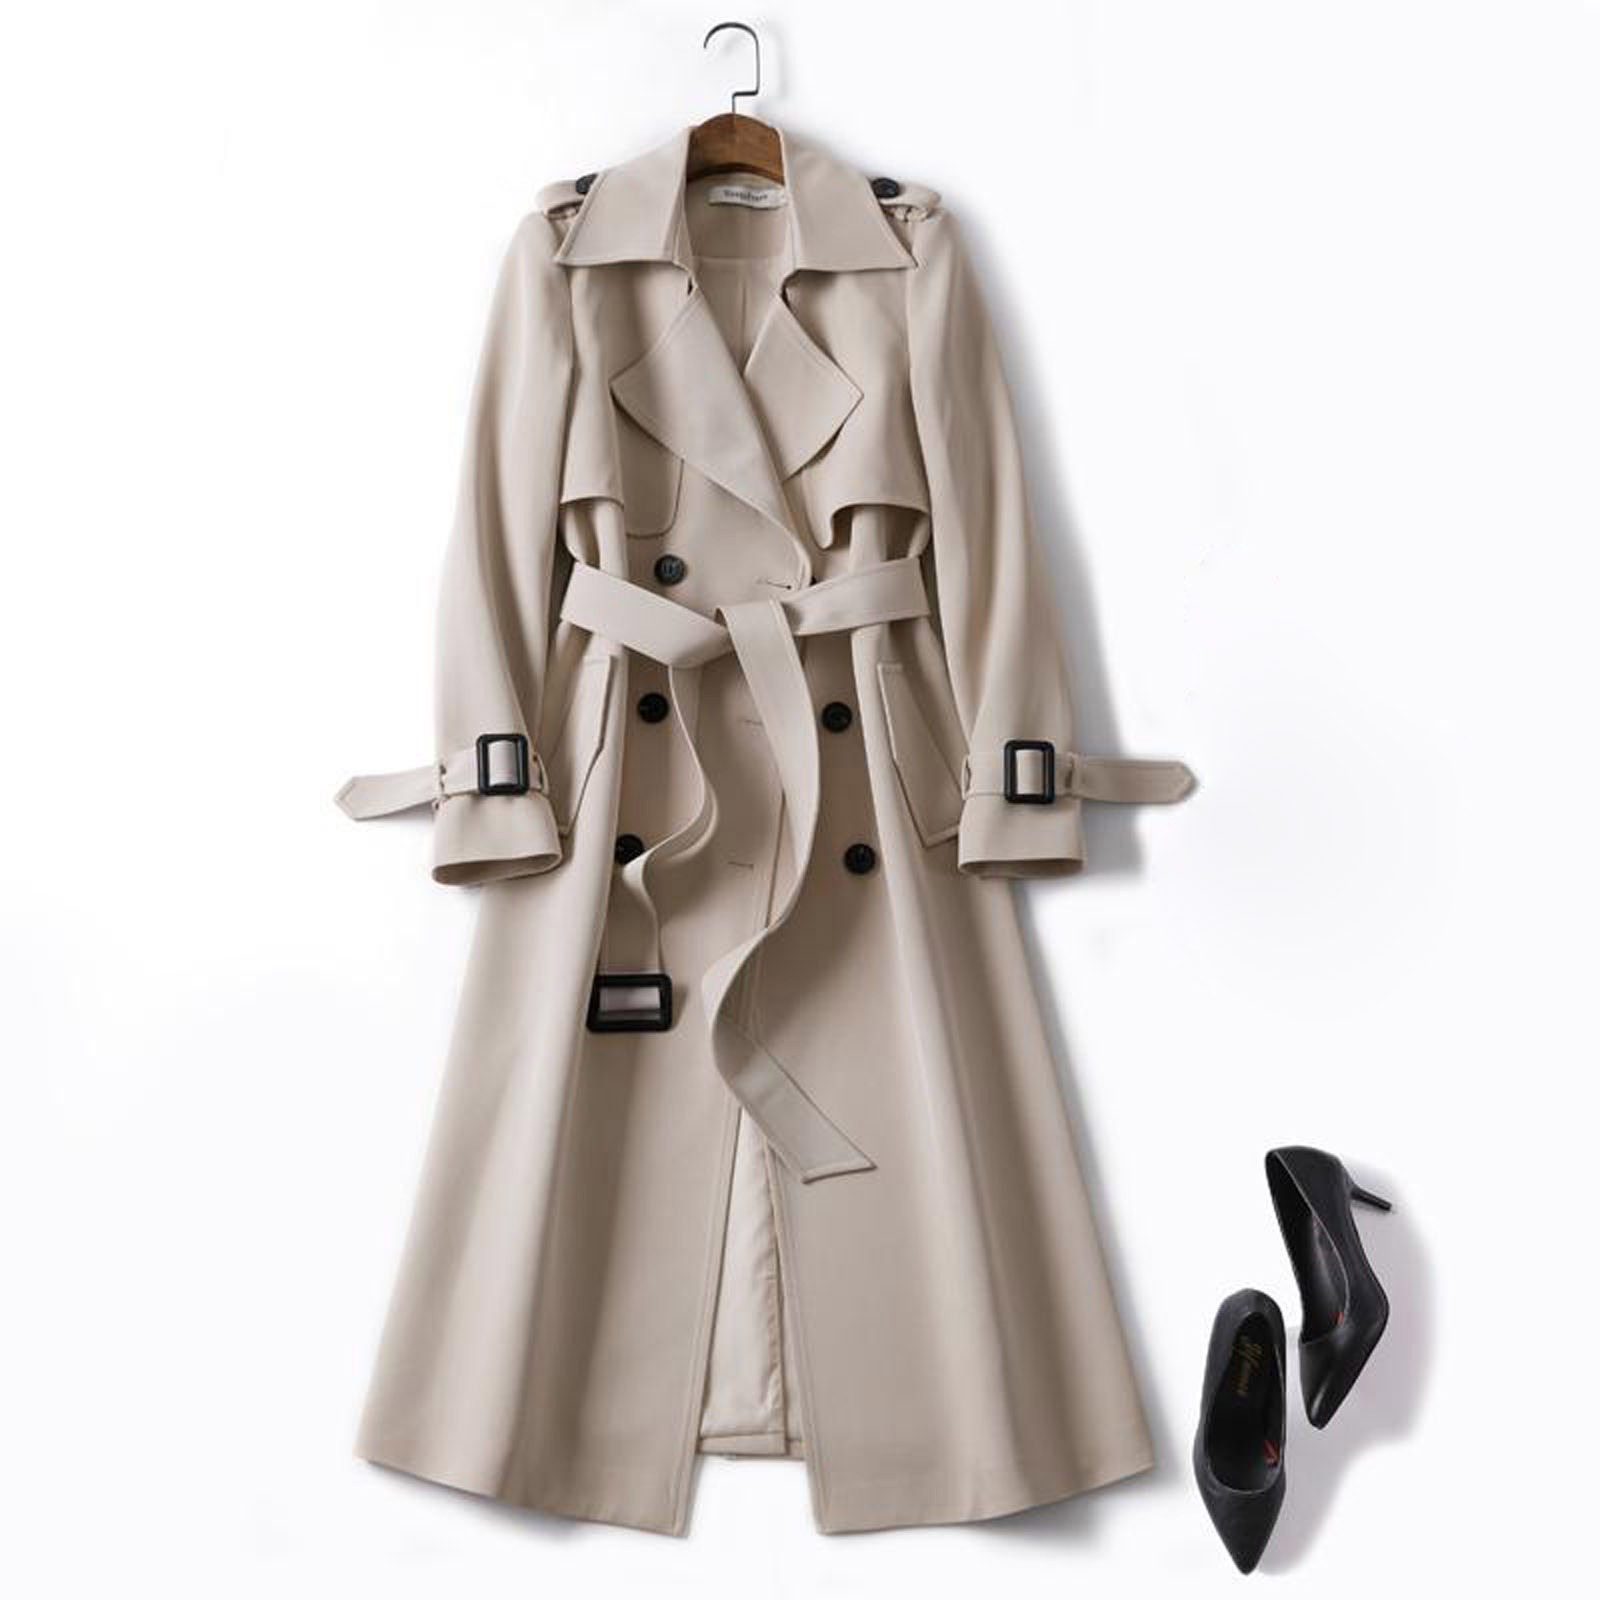 Mnycxen Women Overcoat Solid Slim Fit Coat Jacket Long Outerwear Windbreaker Trench - image 2 of 3